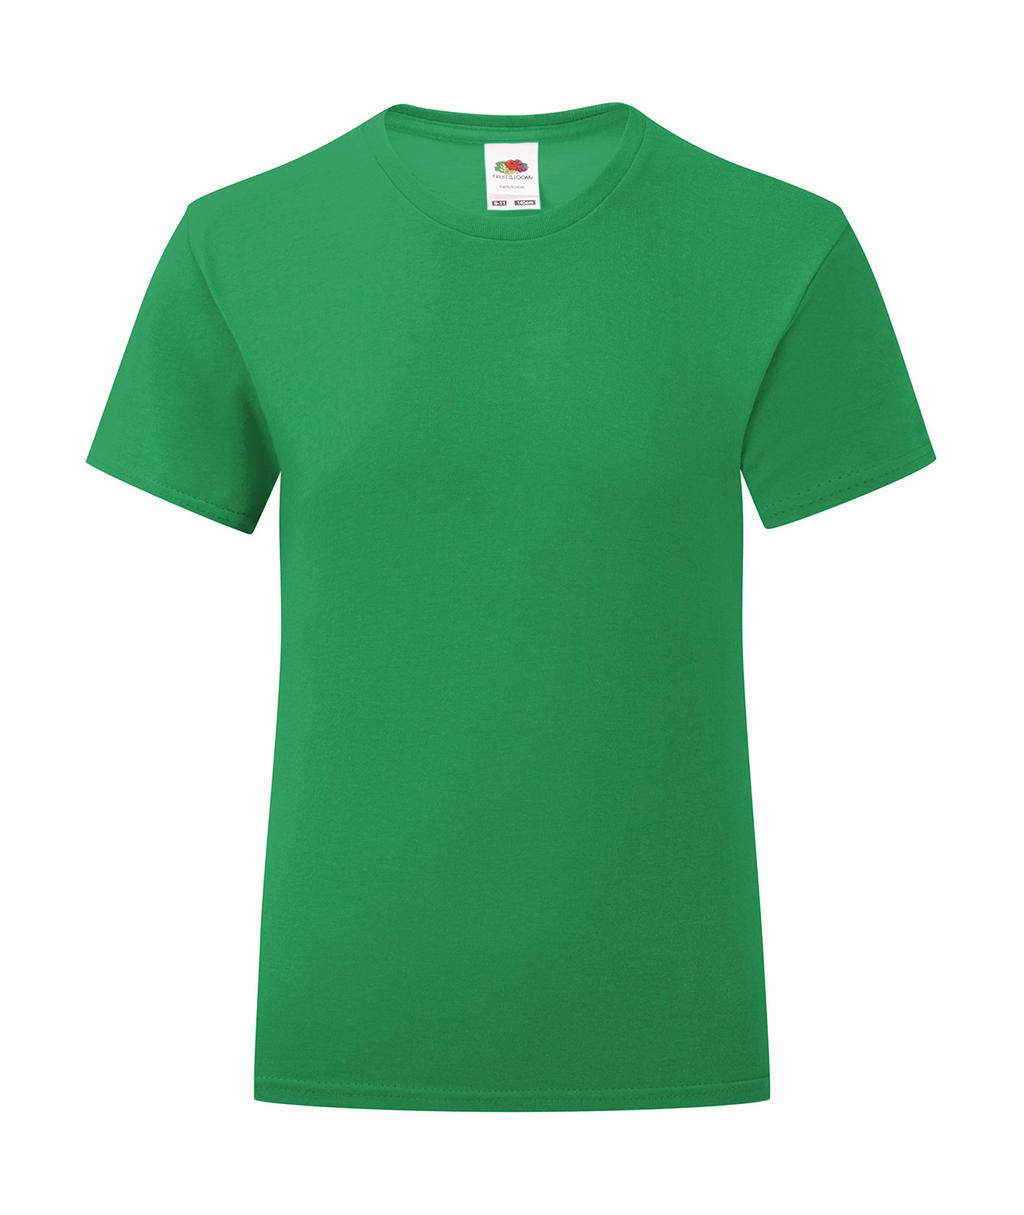 Dívčí tričko Iconic T 150 Barva: středně zelená, Velikost: 5-6 let